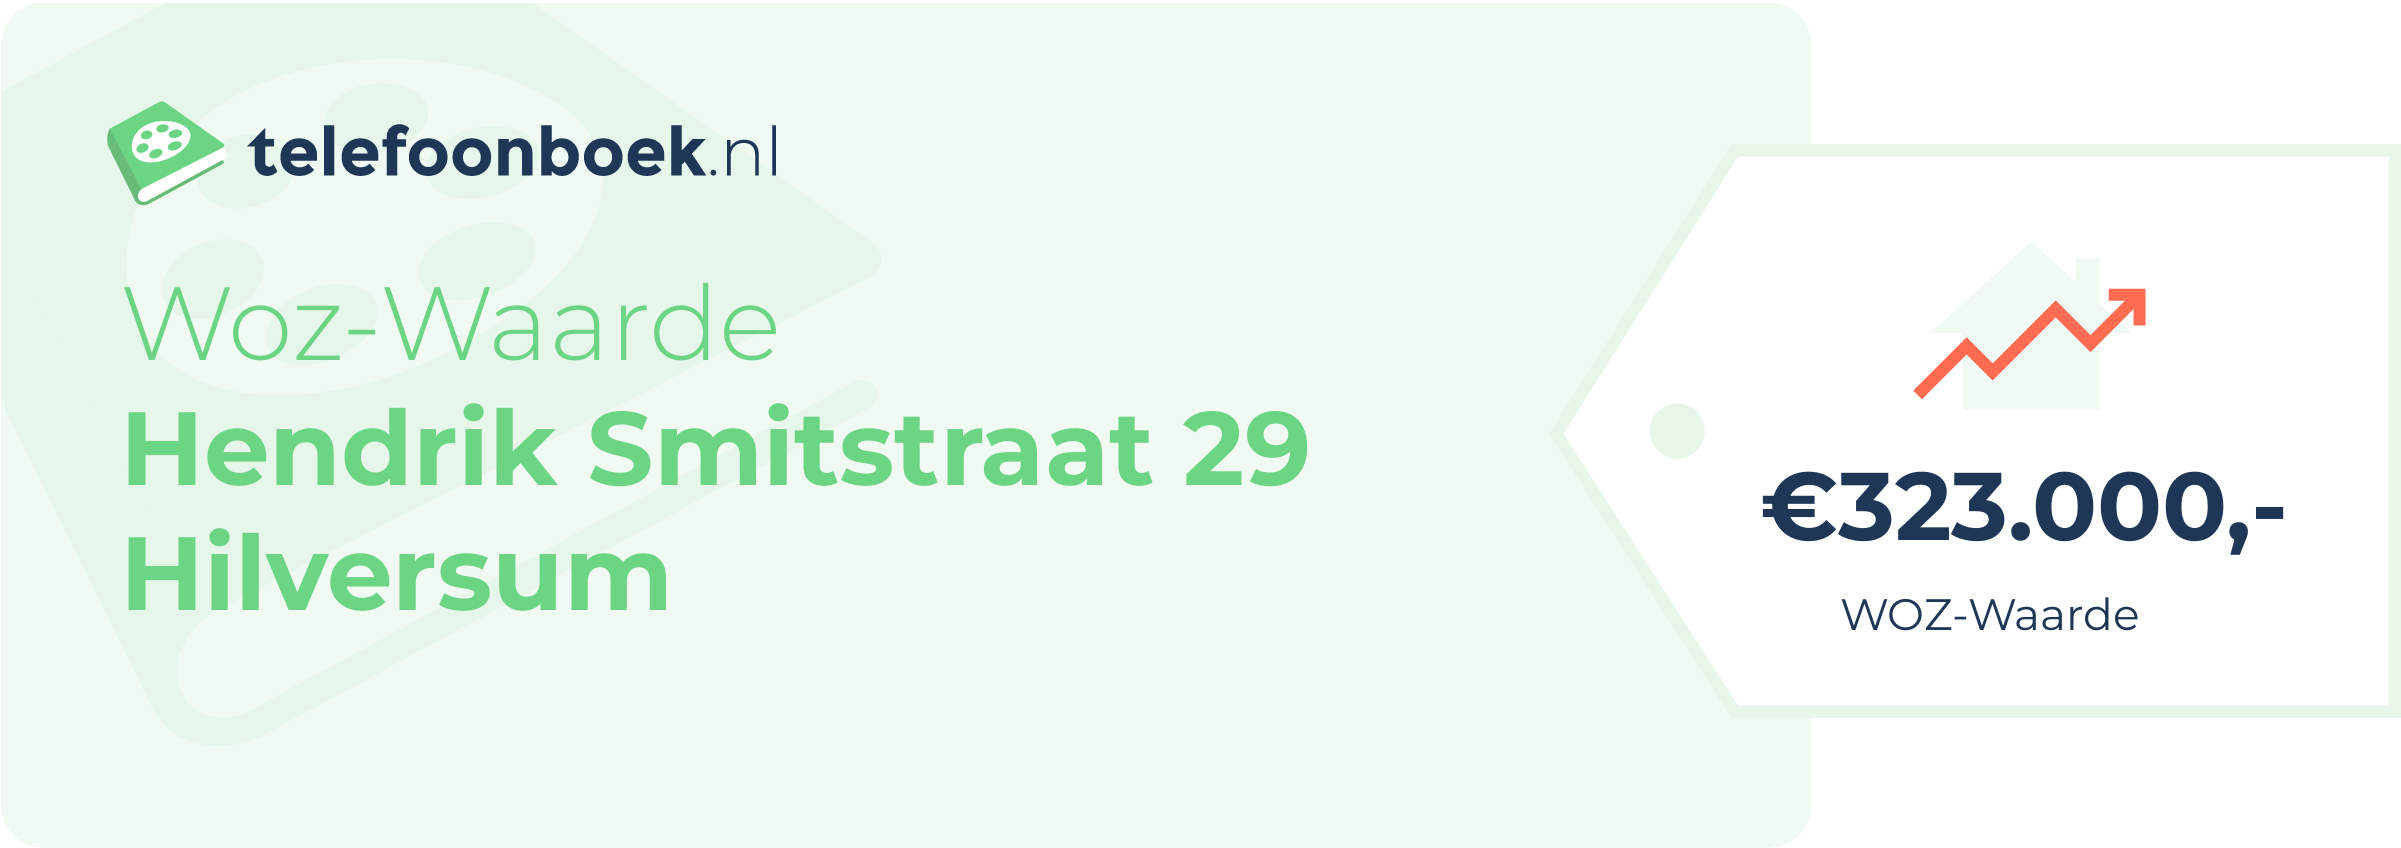 WOZ-waarde Hendrik Smitstraat 29 Hilversum